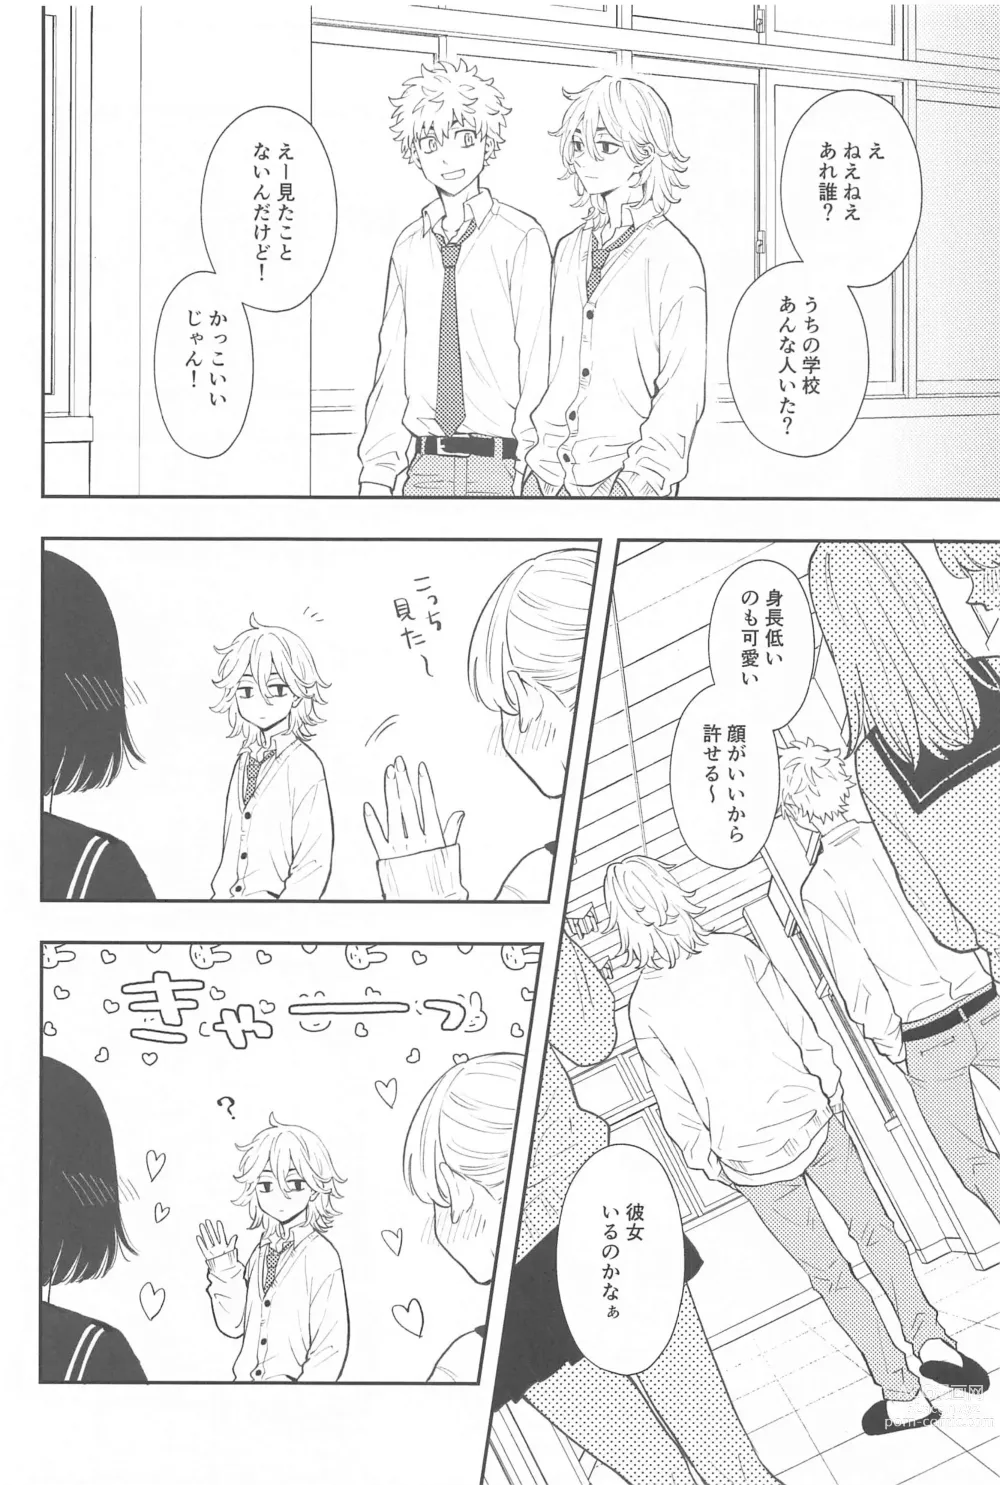 Page 9 of doujinshi Kyou wa Osoroi de!